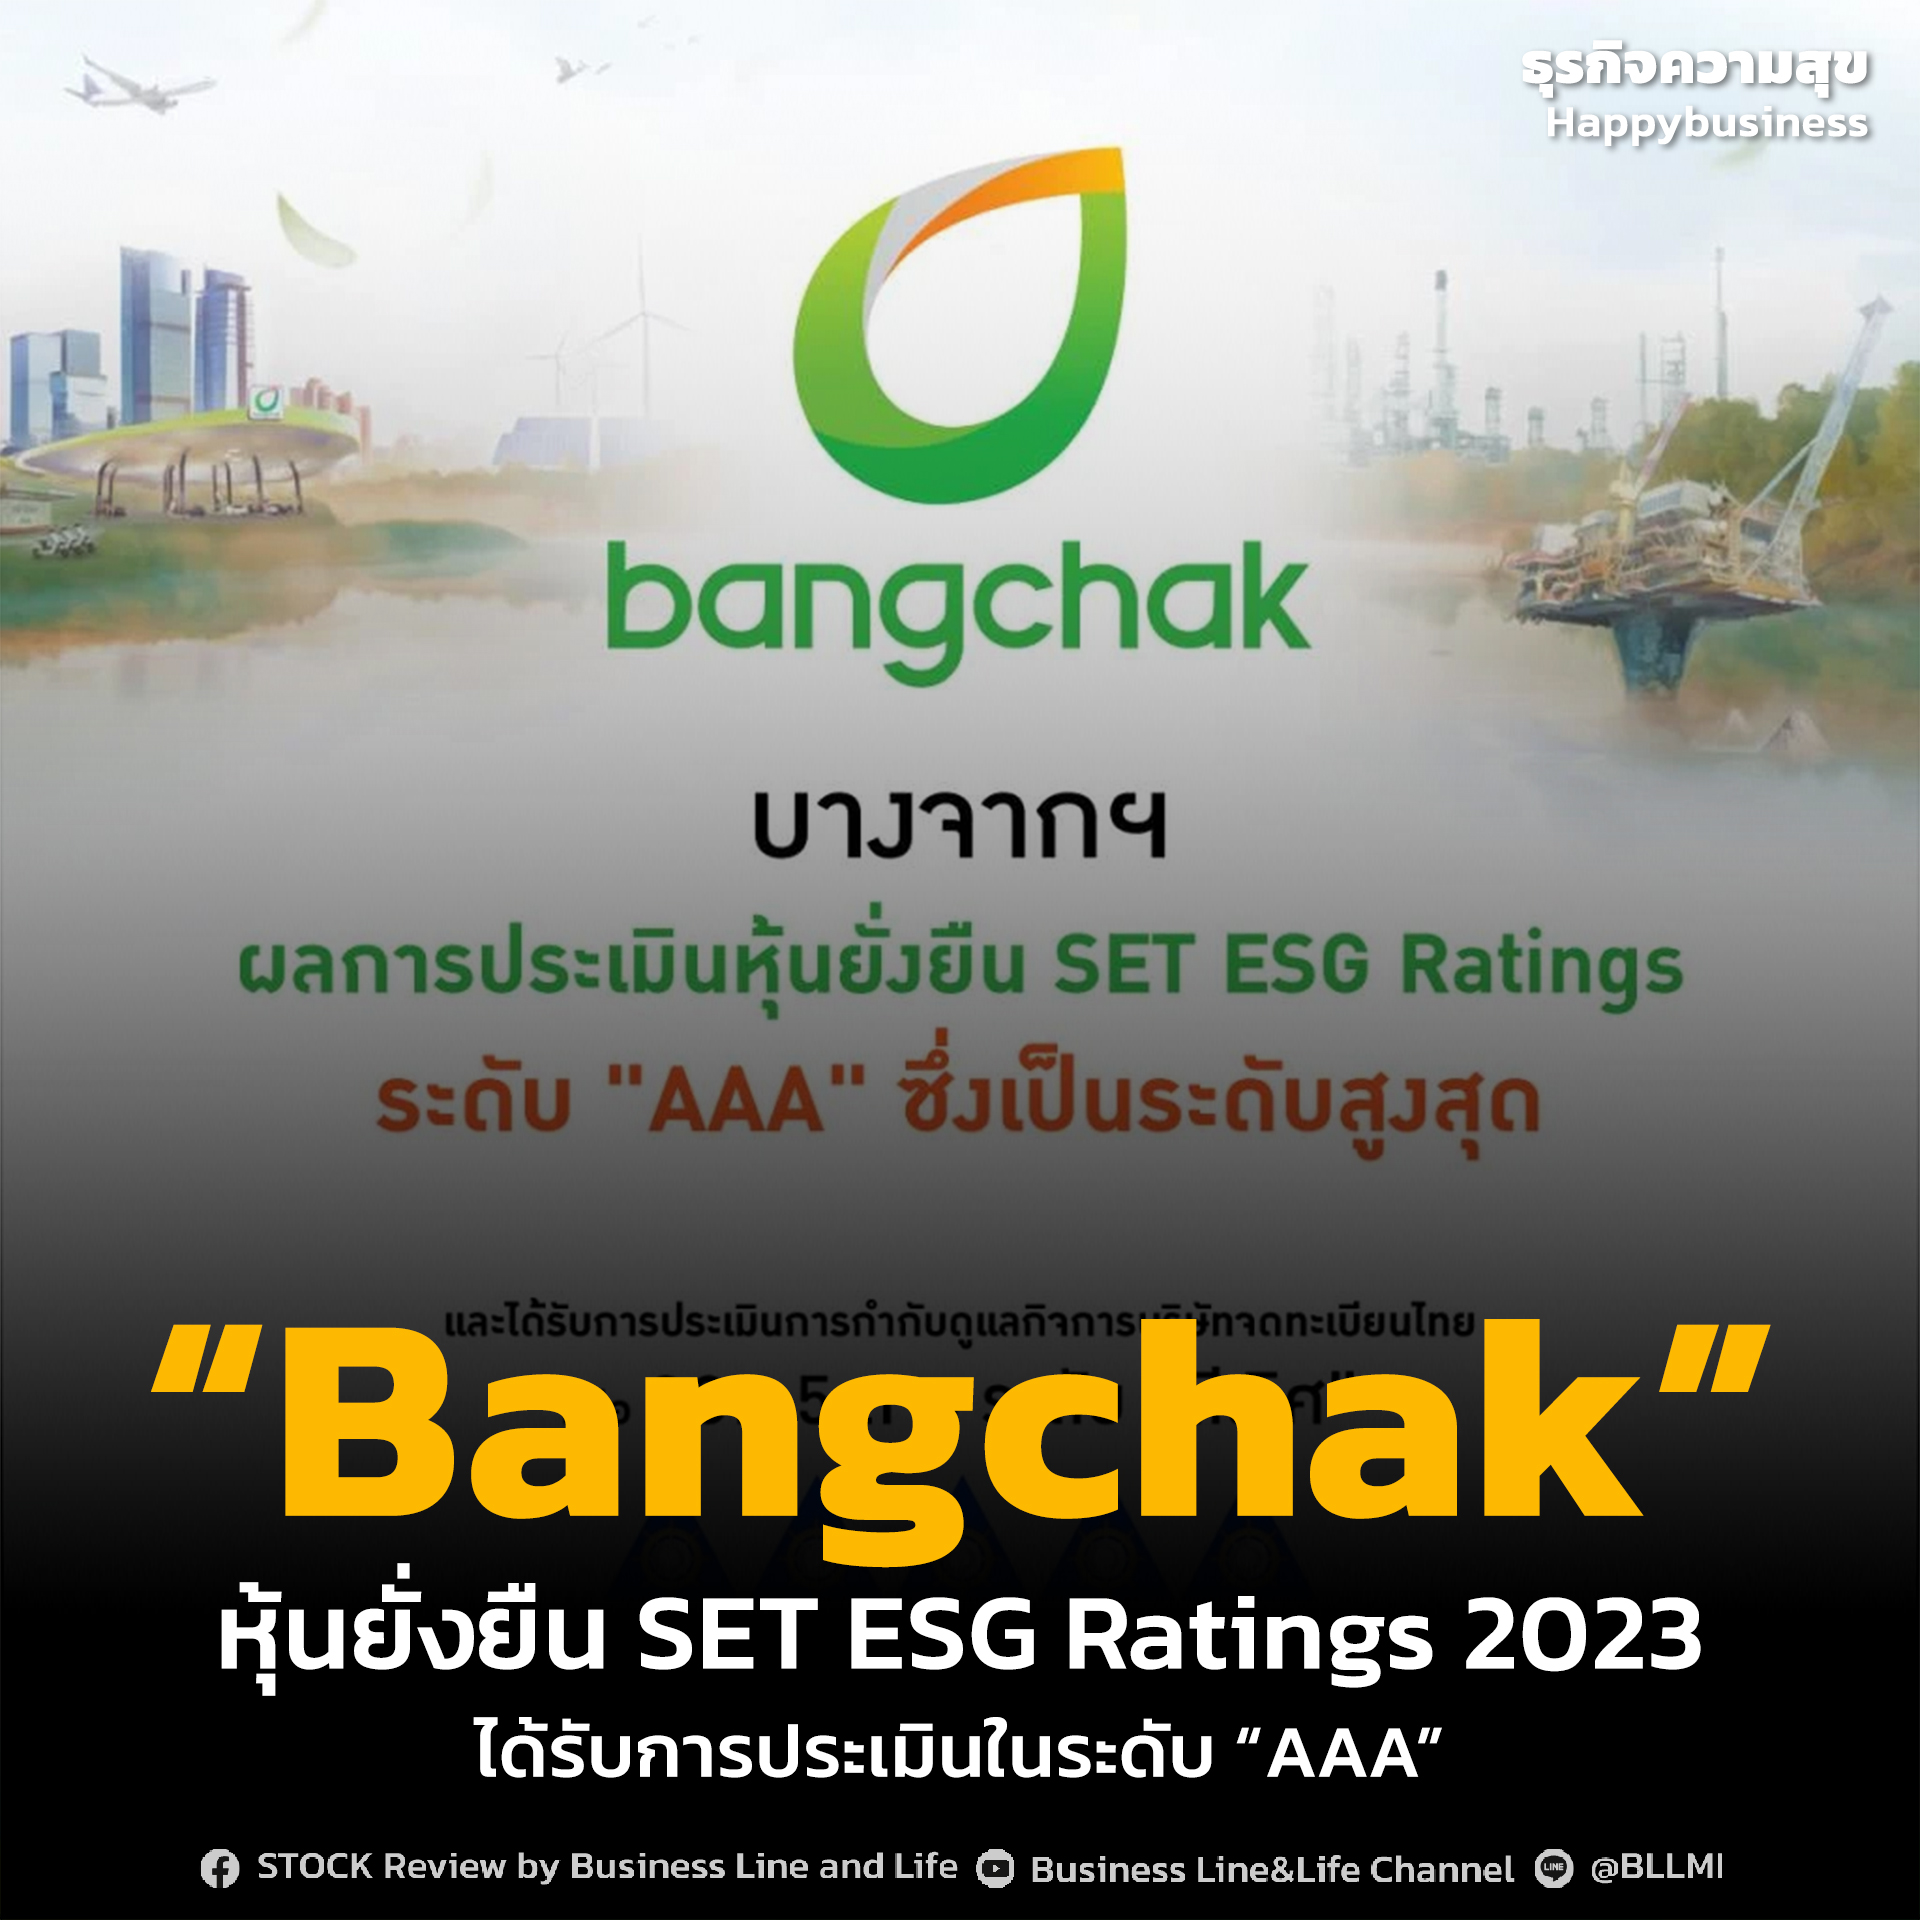 “Bangchak” หุ้นยั่งยืน SET ESG Ratings 2023 ได้รับการประเมินในระดับ “AAA”